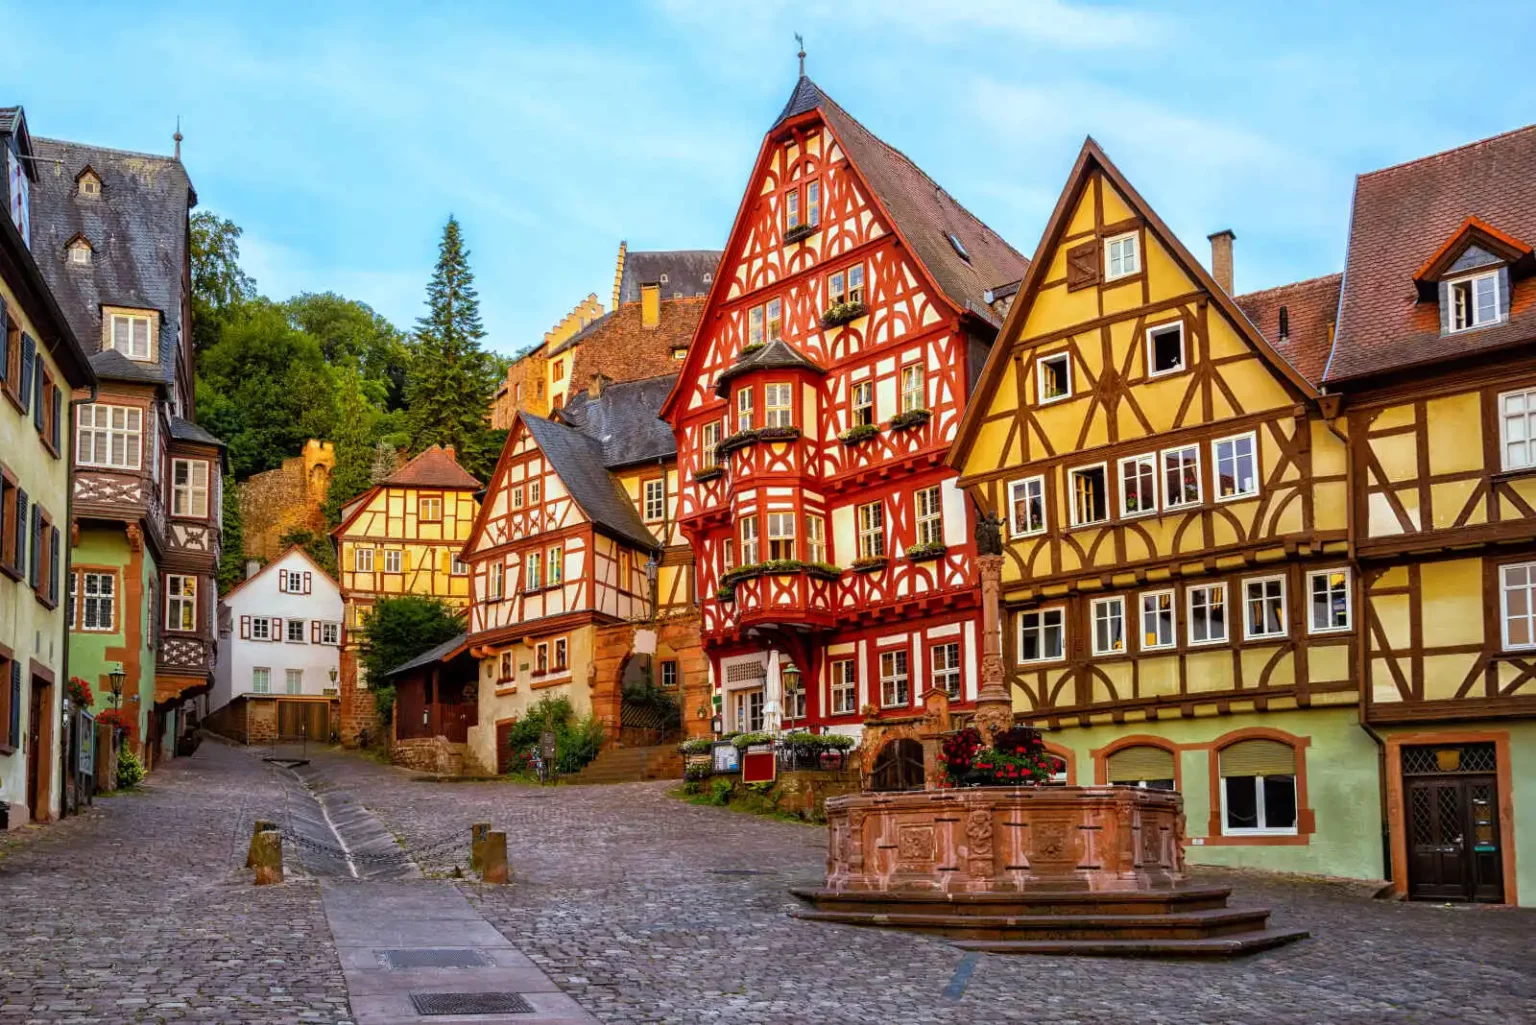 Maisons à colombages colorées, Vieille ville médiévale historique de Miltenberg, Bavière, Allemagne